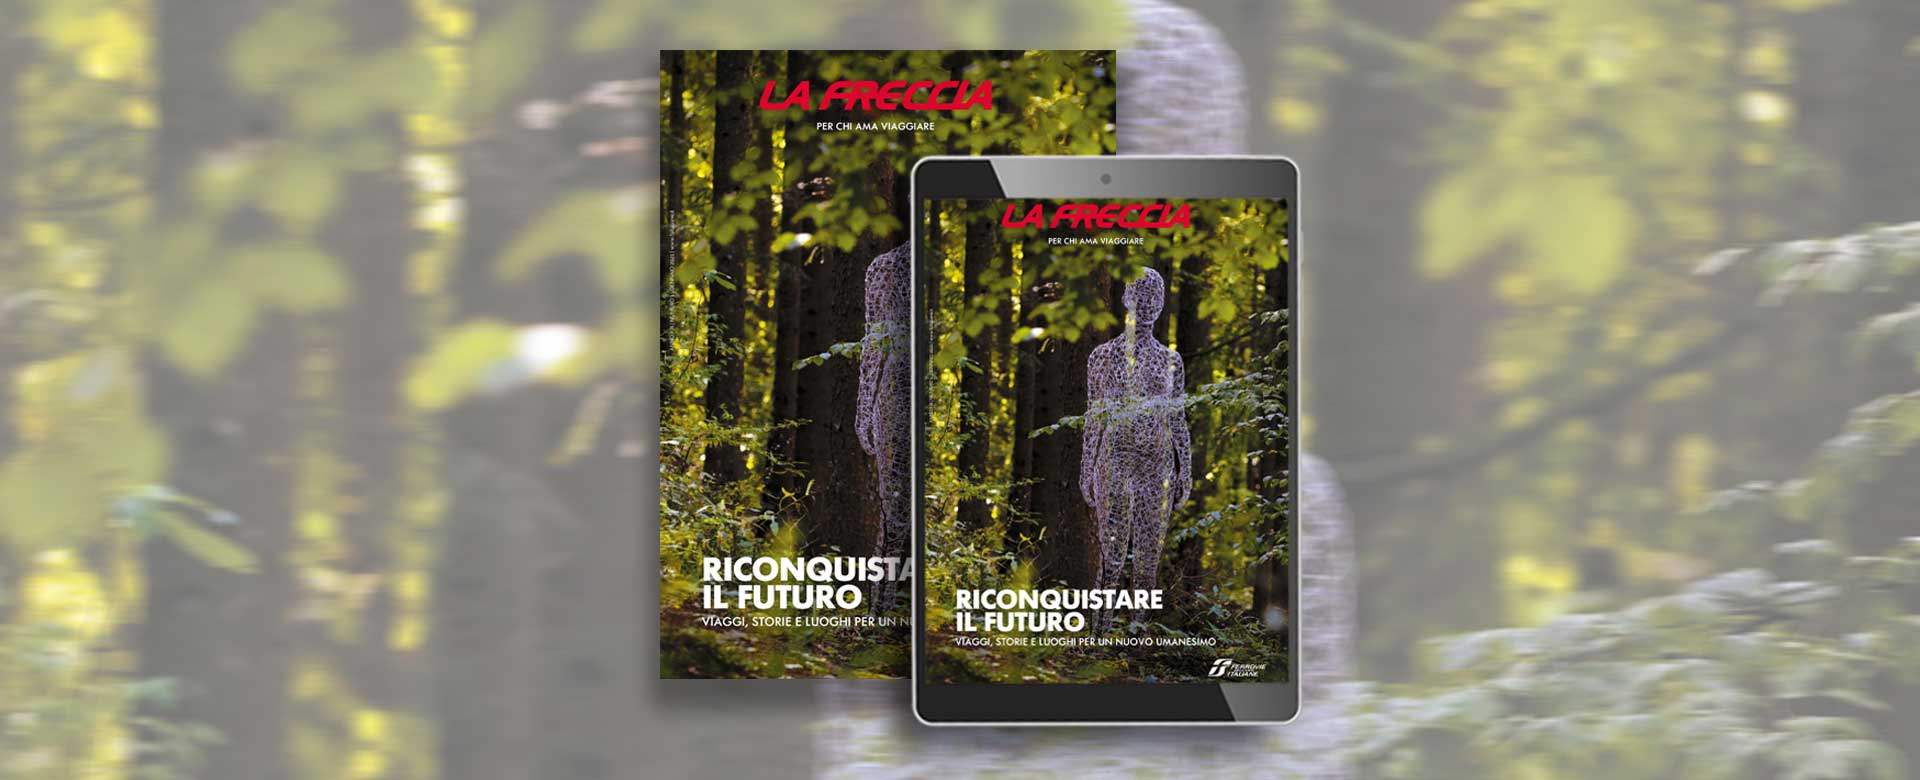 La cover di La Freccia di gennaio 2021 mostra un corpo femminile che prende forma e vita nel mezzo di un bosco, opera dell'artista Cédric Le Borgne.